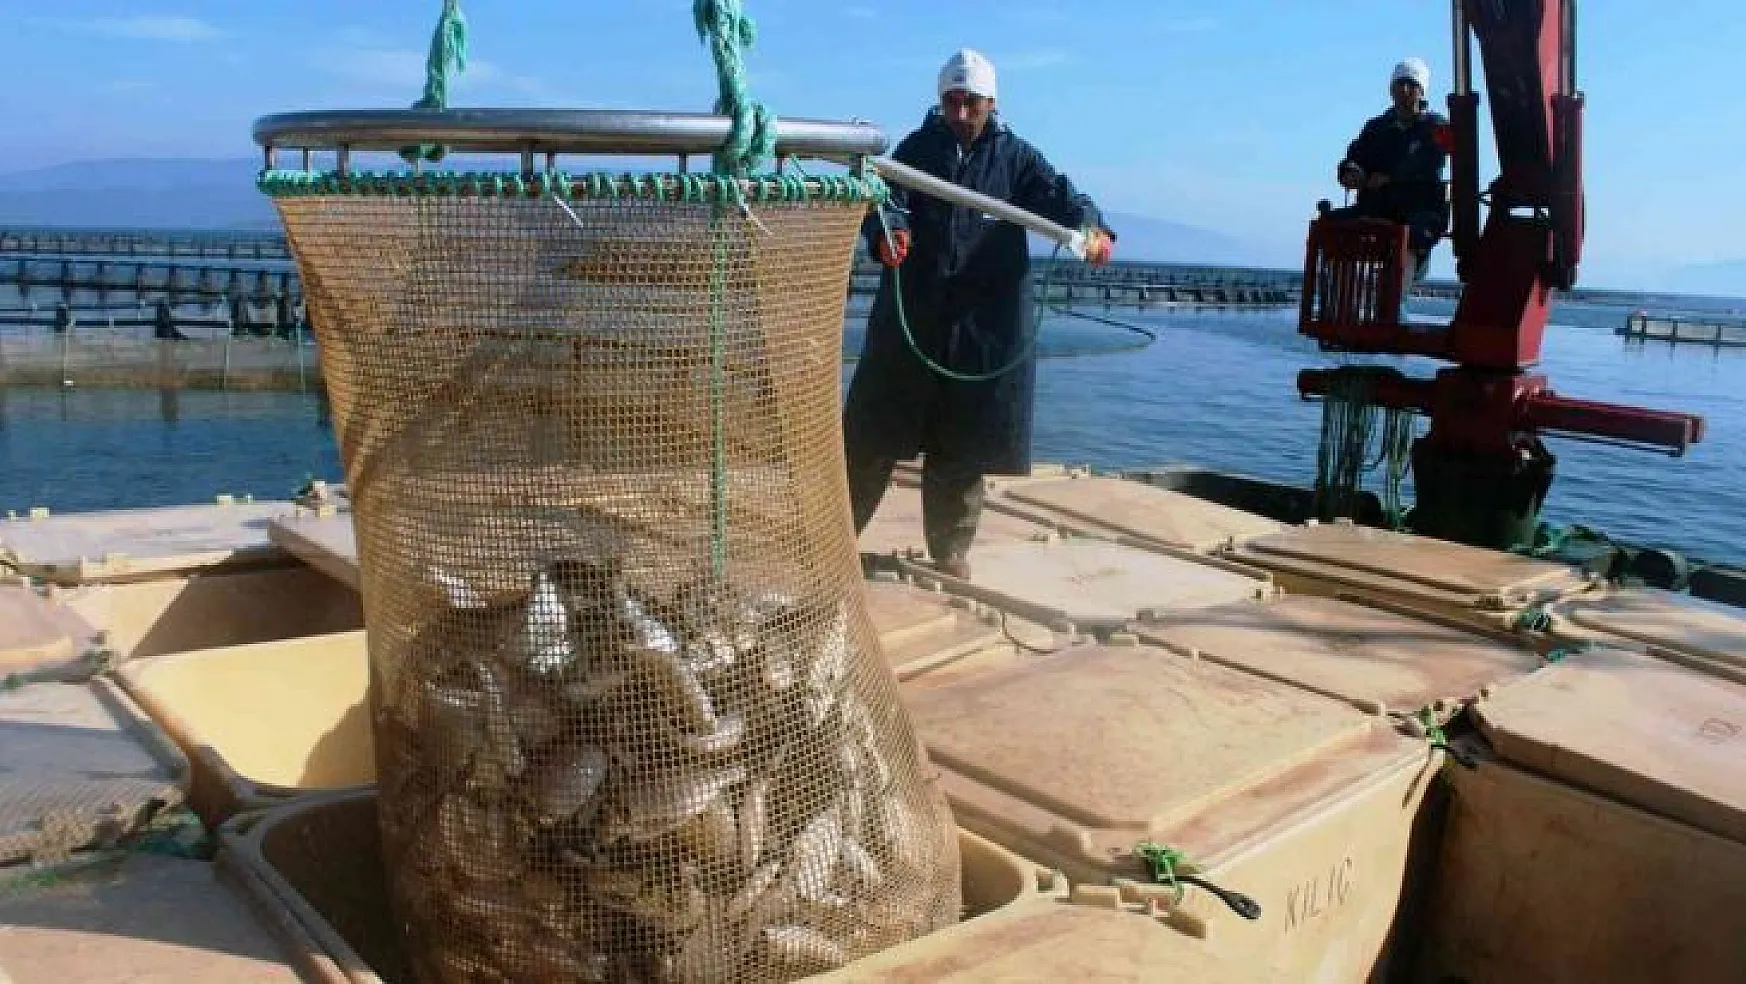 Muğla'dan 54 ülkeye 453 milyon dolarlık balık ihracatı